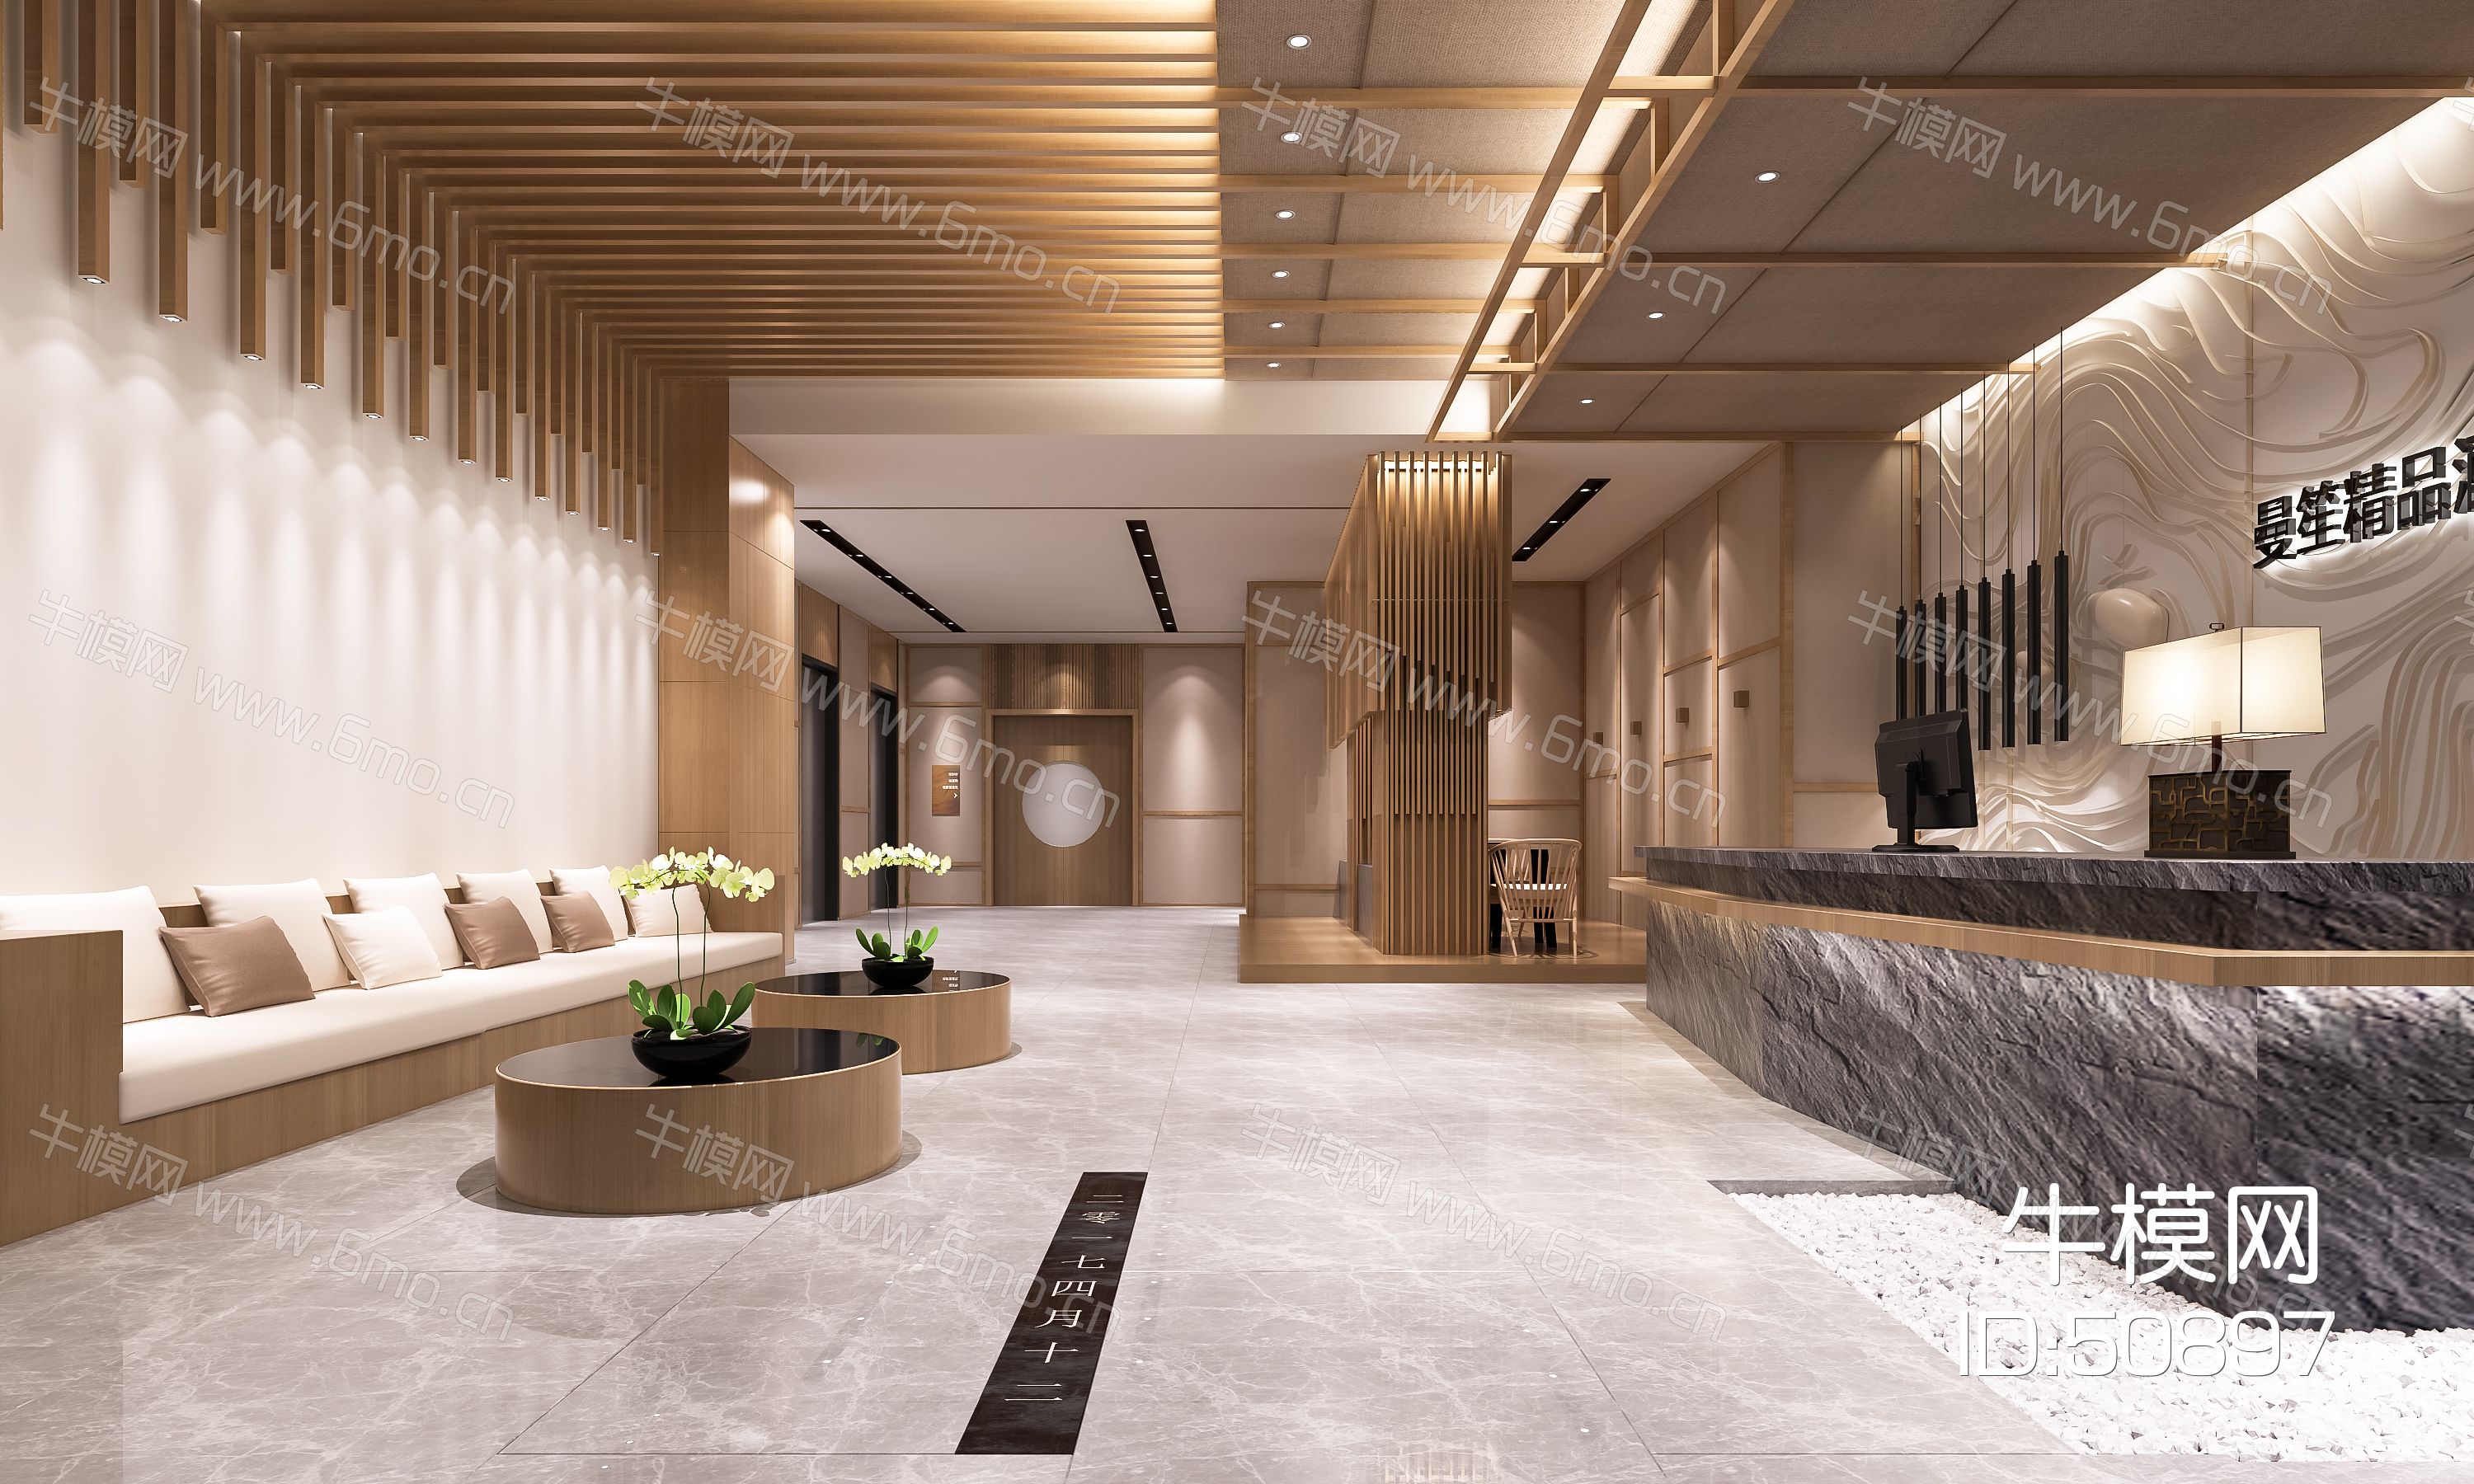 新中式公司接待大厅  前台   沙发茶几  墙面装饰 大理石前台 